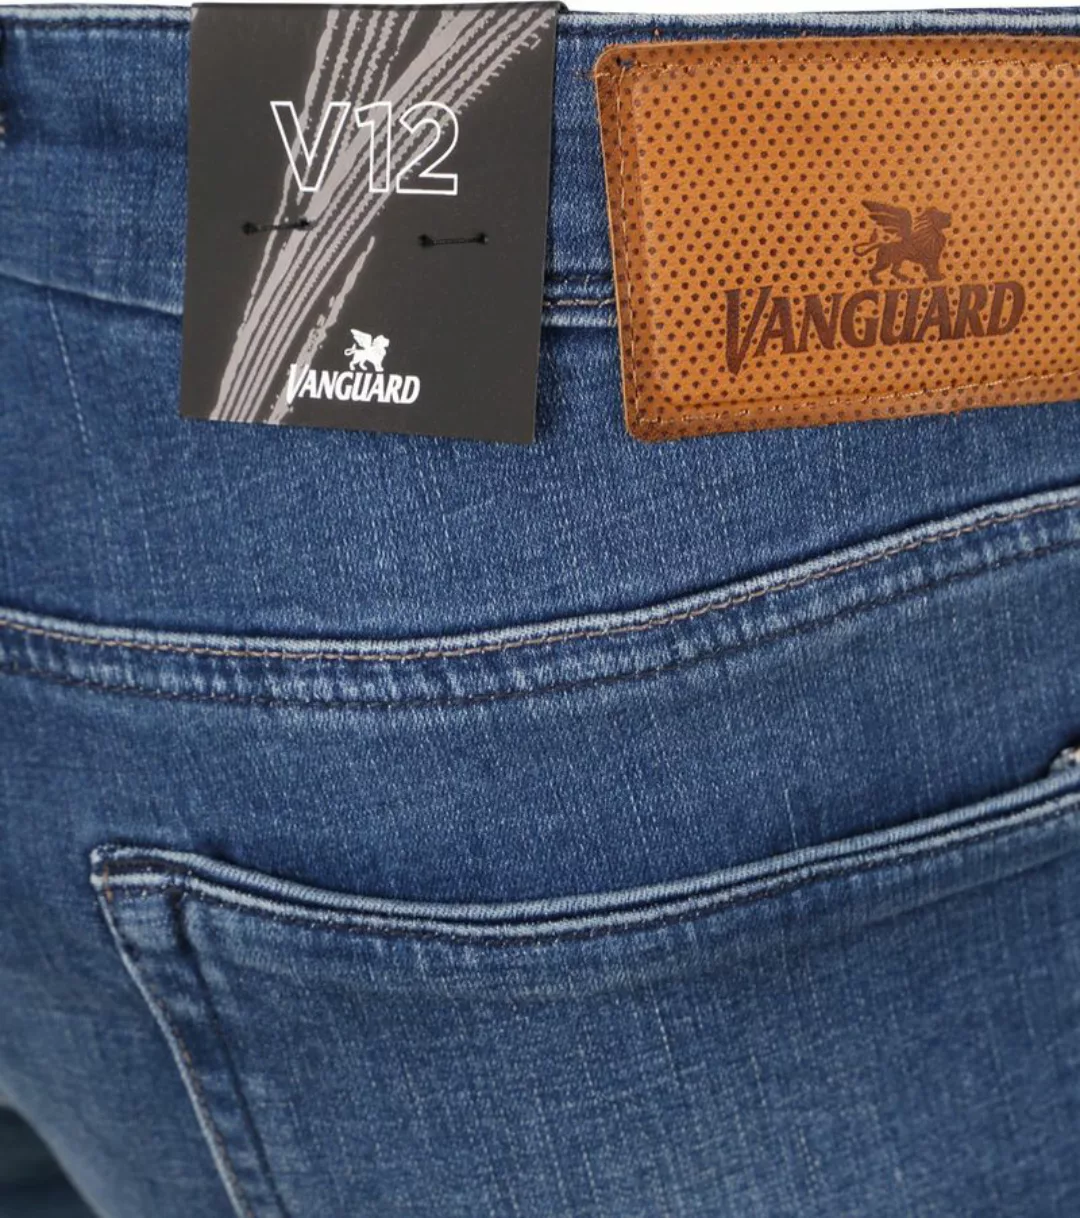 Vanguard Jeans V12 Rider Blau FIB - Größe W 36 - L 34 günstig online kaufen